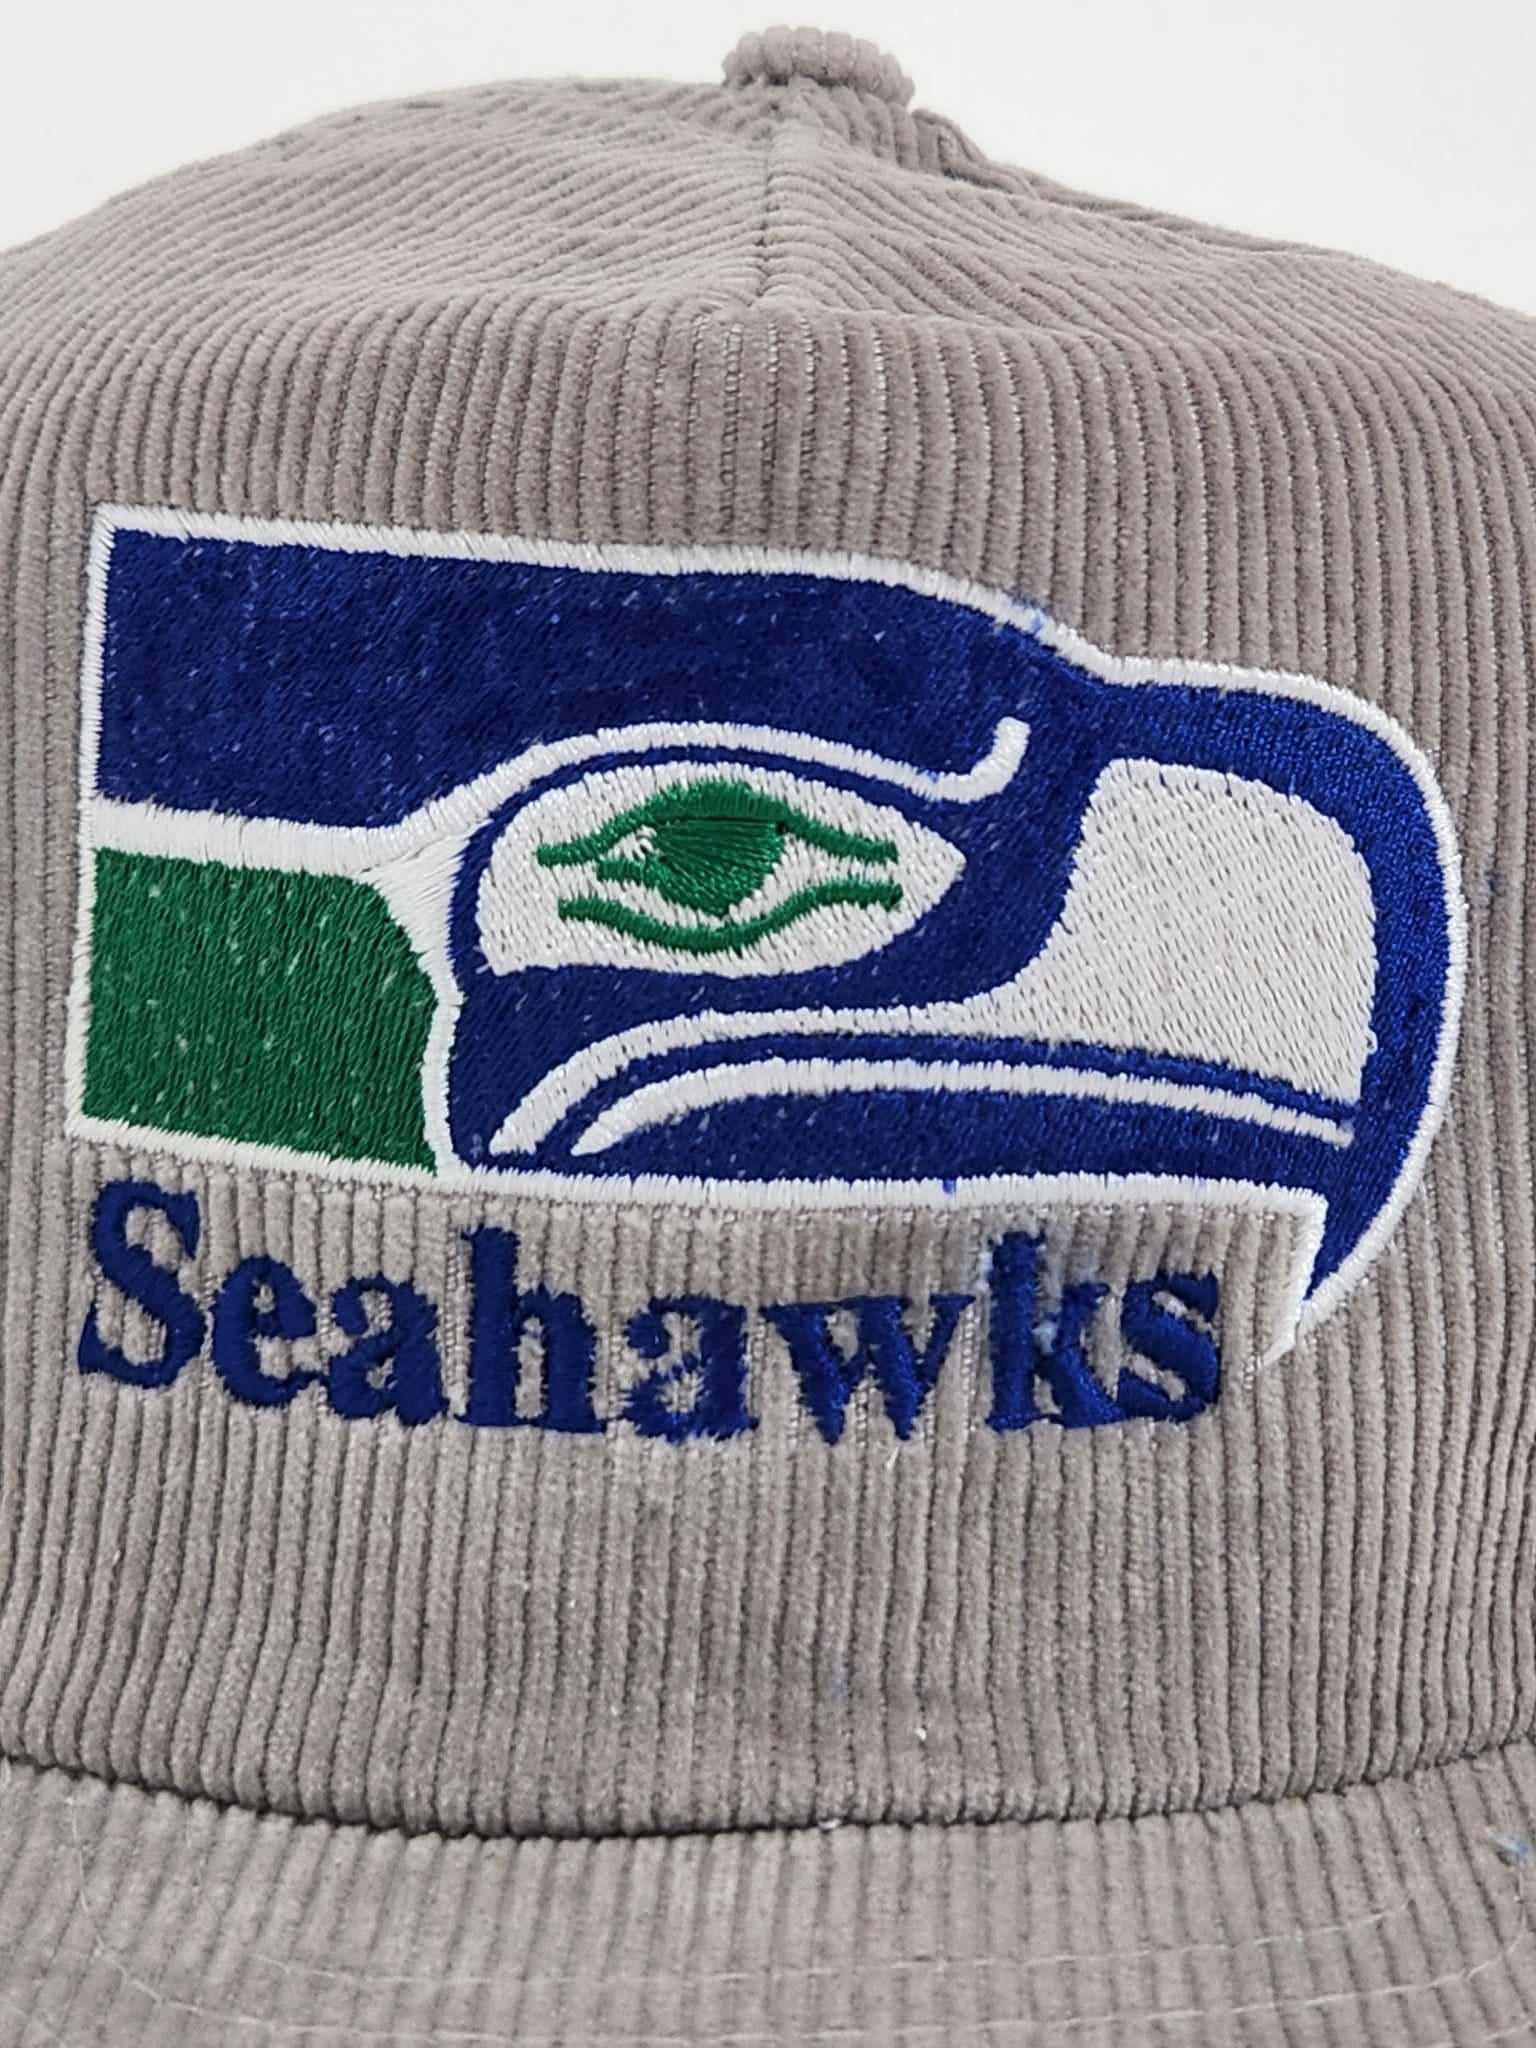 Vintage Seattle Seahawks NFL Alumni Stapback Strap Rope Cap Hat New Oldstock